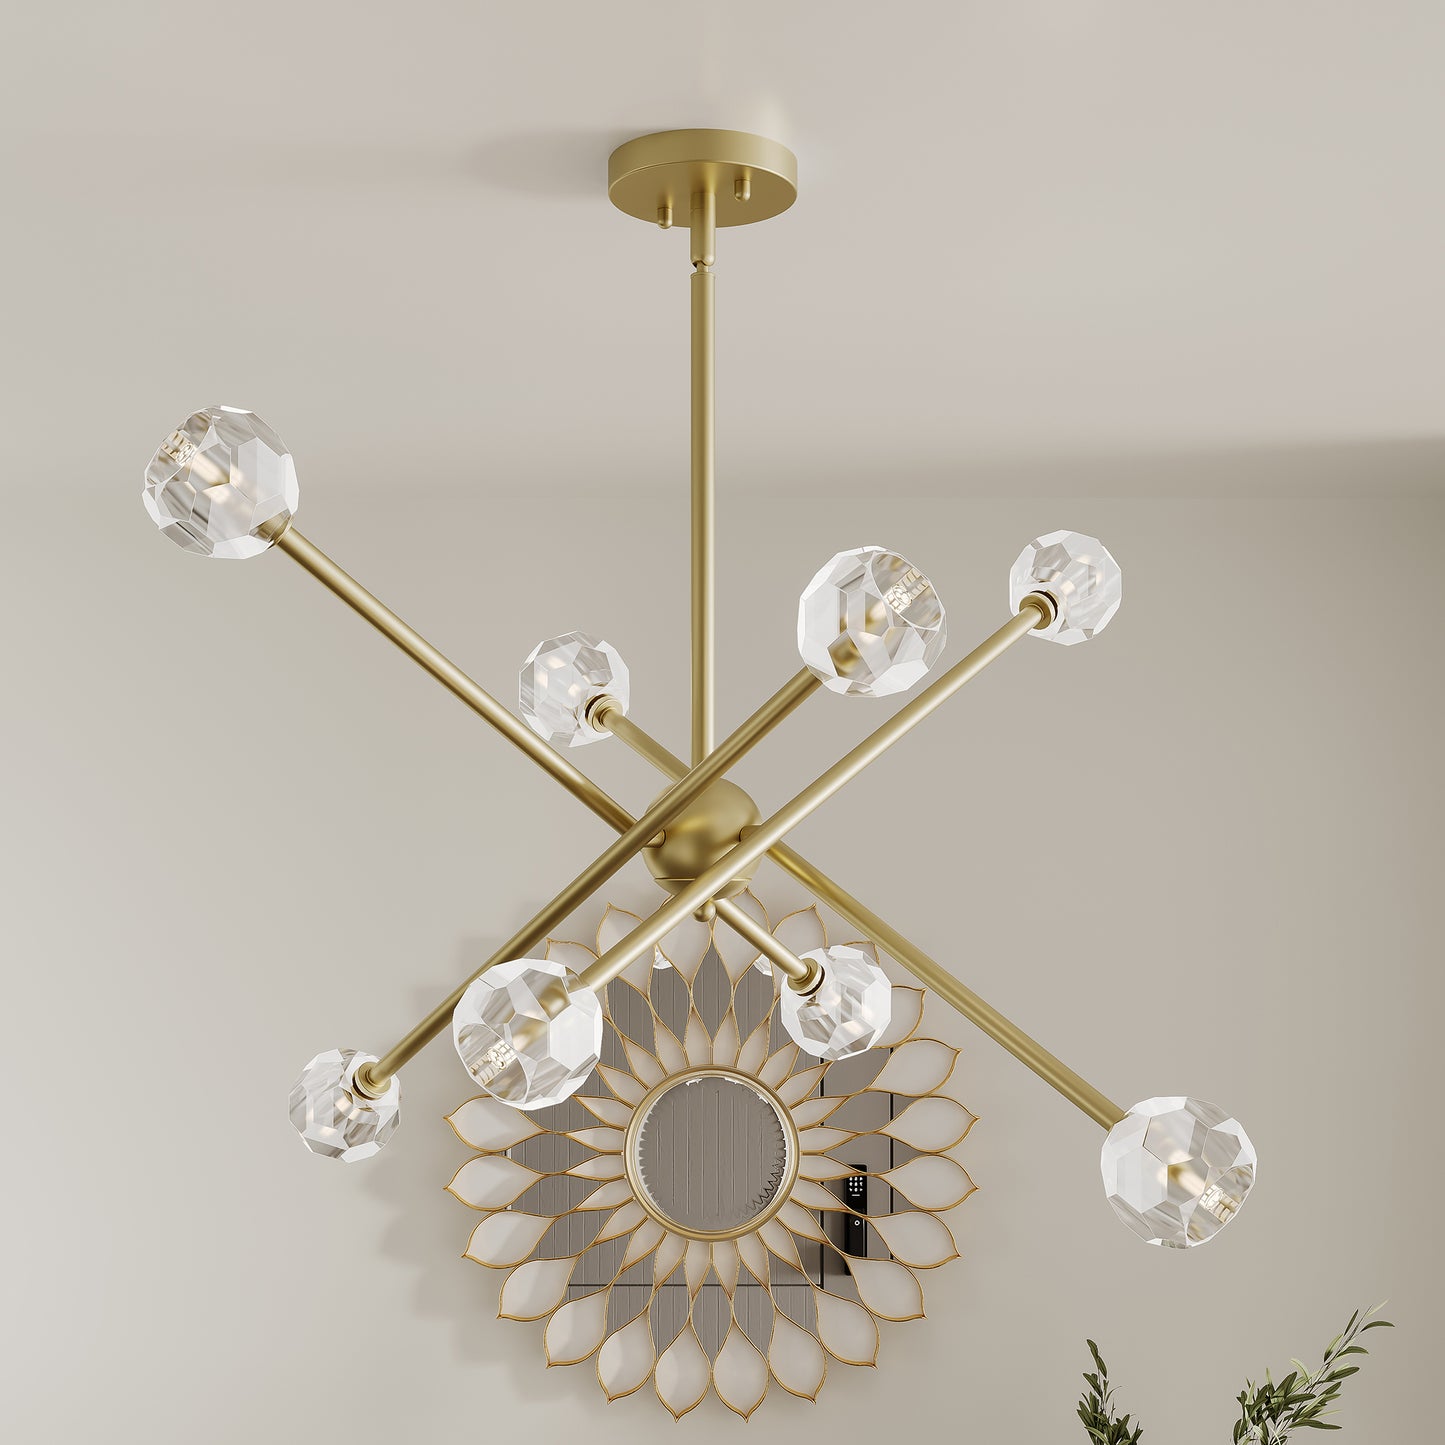 8 light sputnik glass chandelier (1) by ACROMA